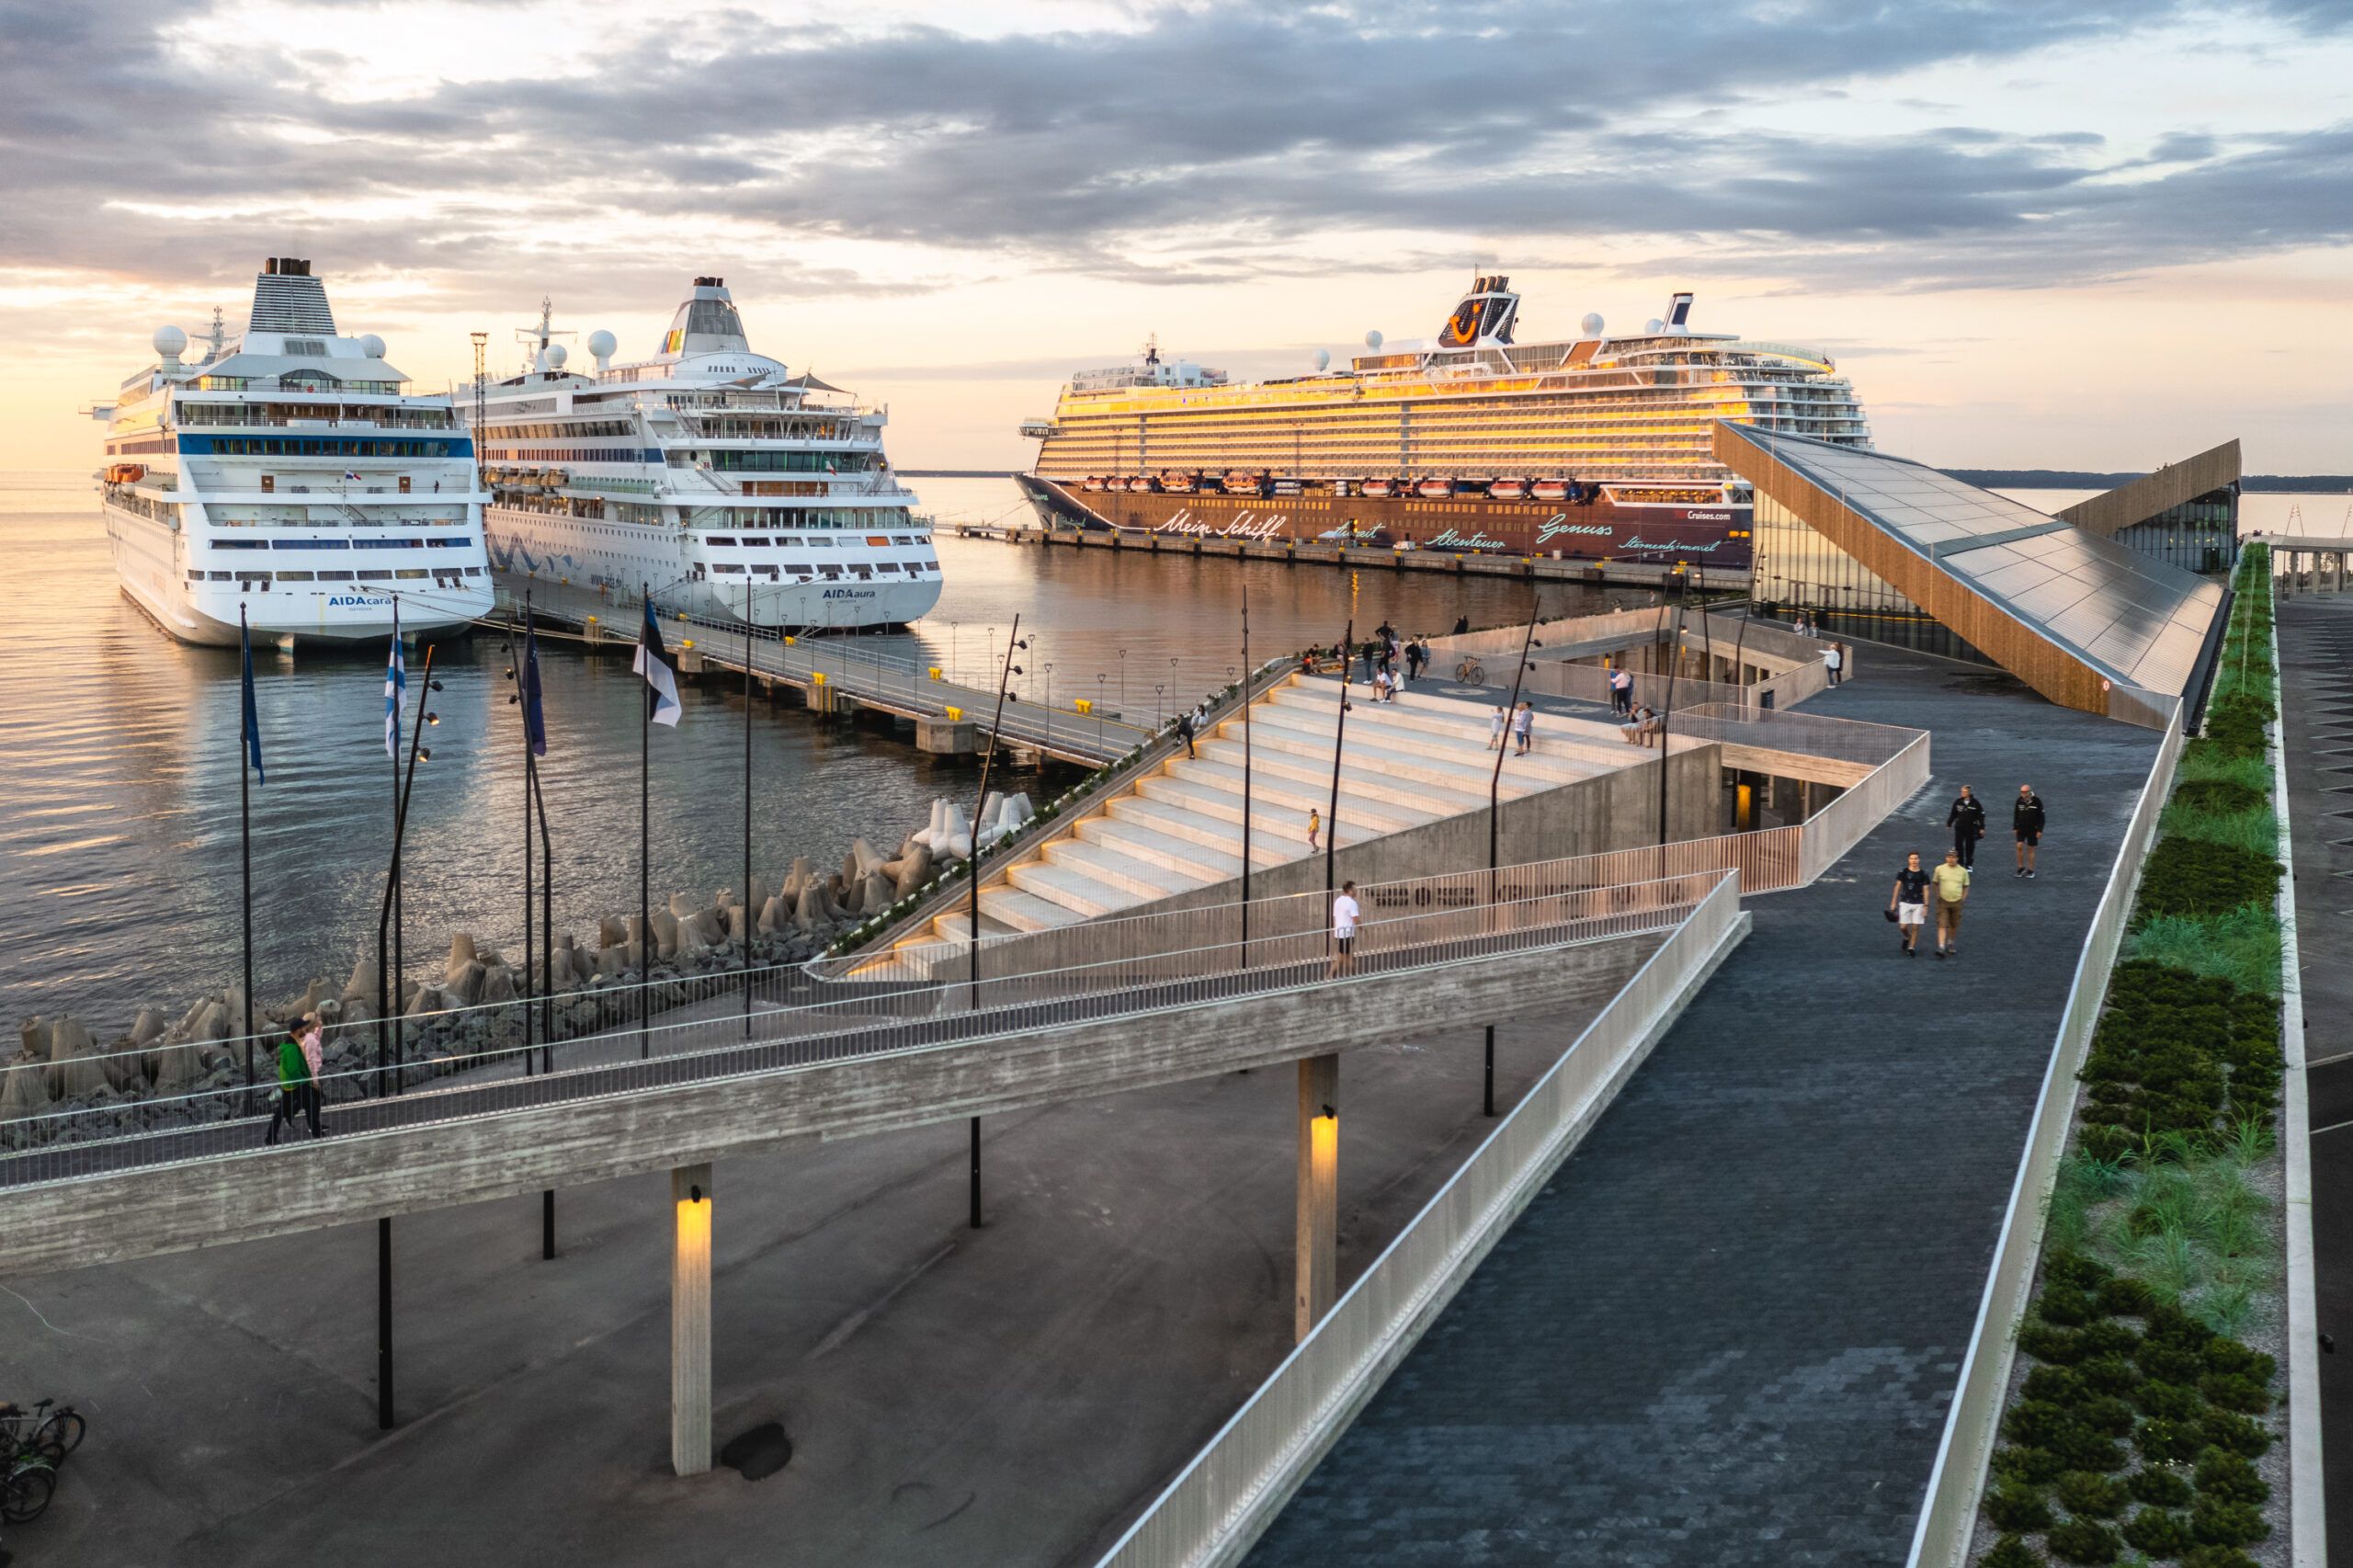  La nueva terminal de cruceros inaugurada en 2021 se utiliza para distintos eventos que añaden valor a la comunidad local y una menor huella ambiental. (Port of Tallinn)